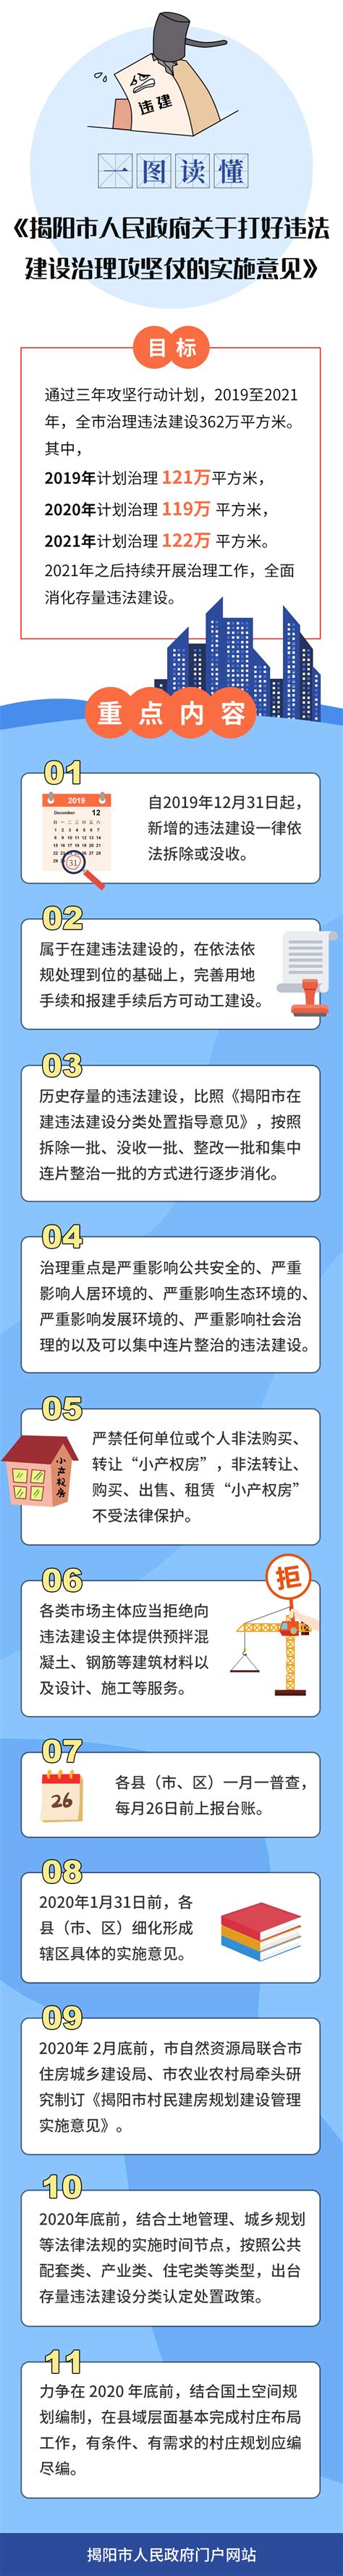 揭阳市综合中等专业学校2019年招生简章